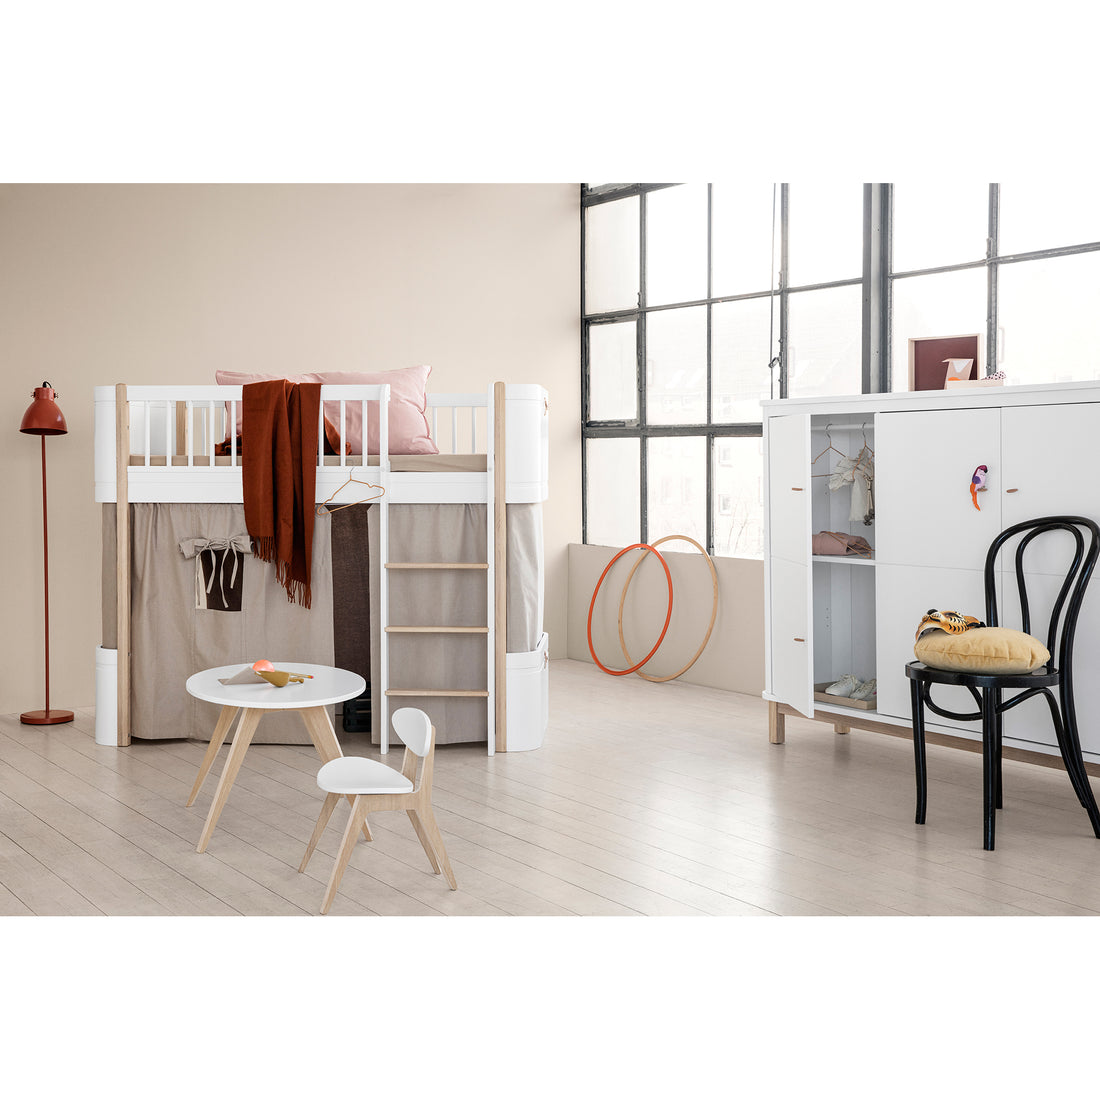 Oliver Furniture Wood Mattress For Wood Mini+ Junior Bed / Mini+ Low Loft Bed / Mini+ Low Bunk Bed 68 x 162 x 12cm